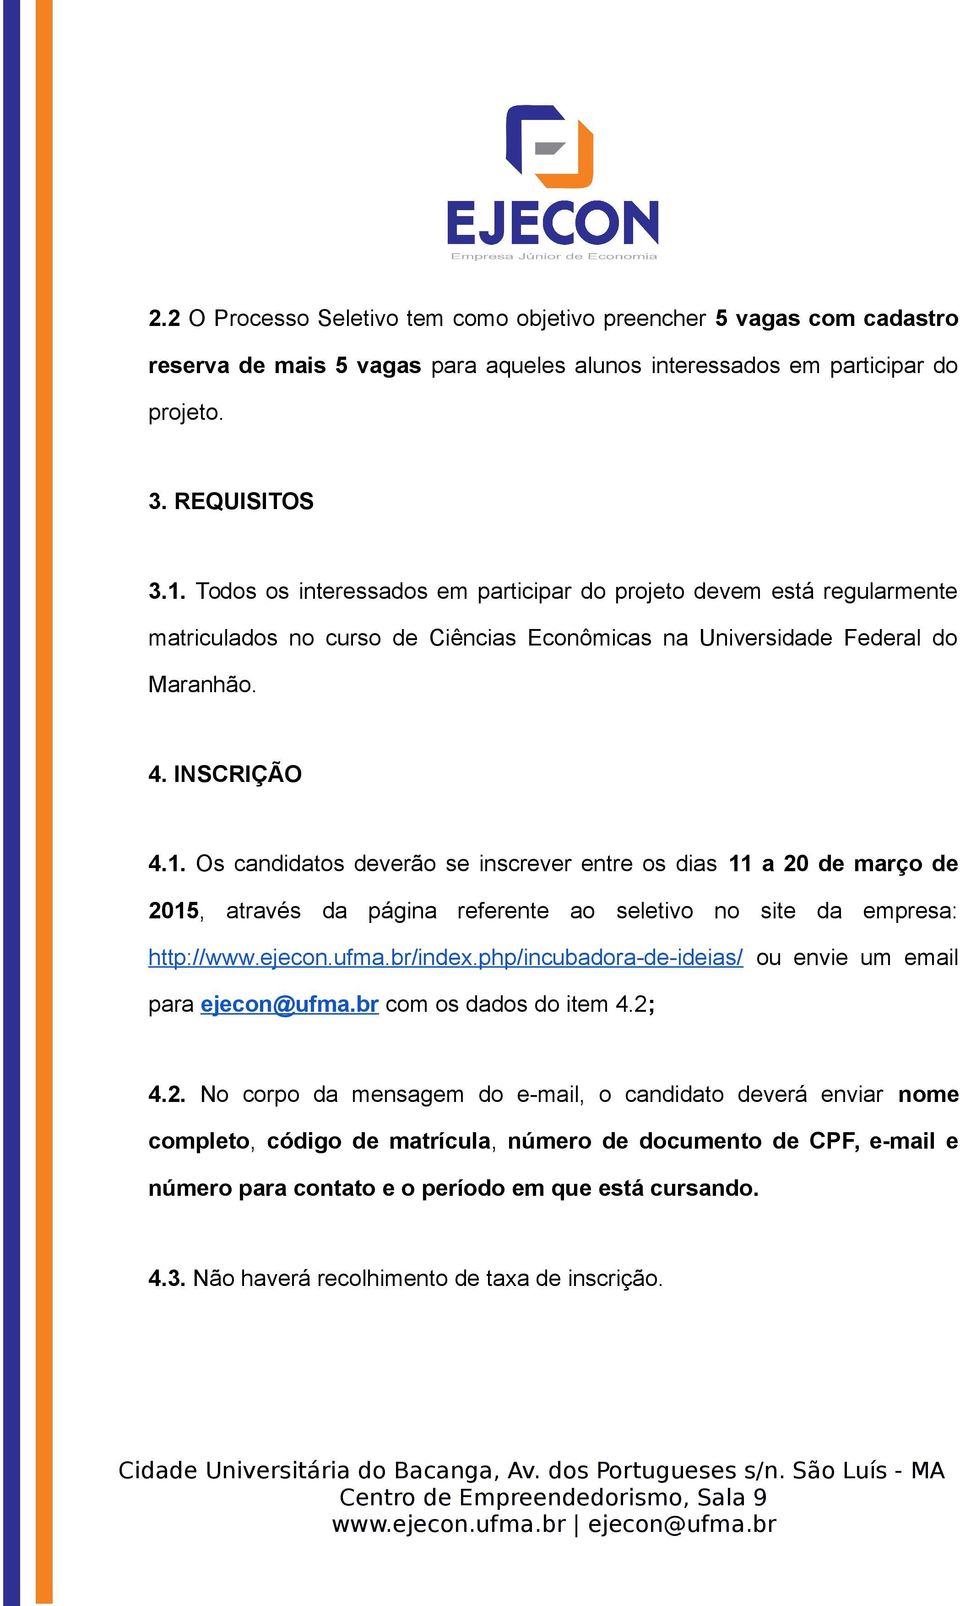 Os candidatos deverão se inscrever entre os dias 11 a 20 de março de 2015, através da página referente ao seletivo no site da empresa: http://www.ejecon.ufma.br/index.